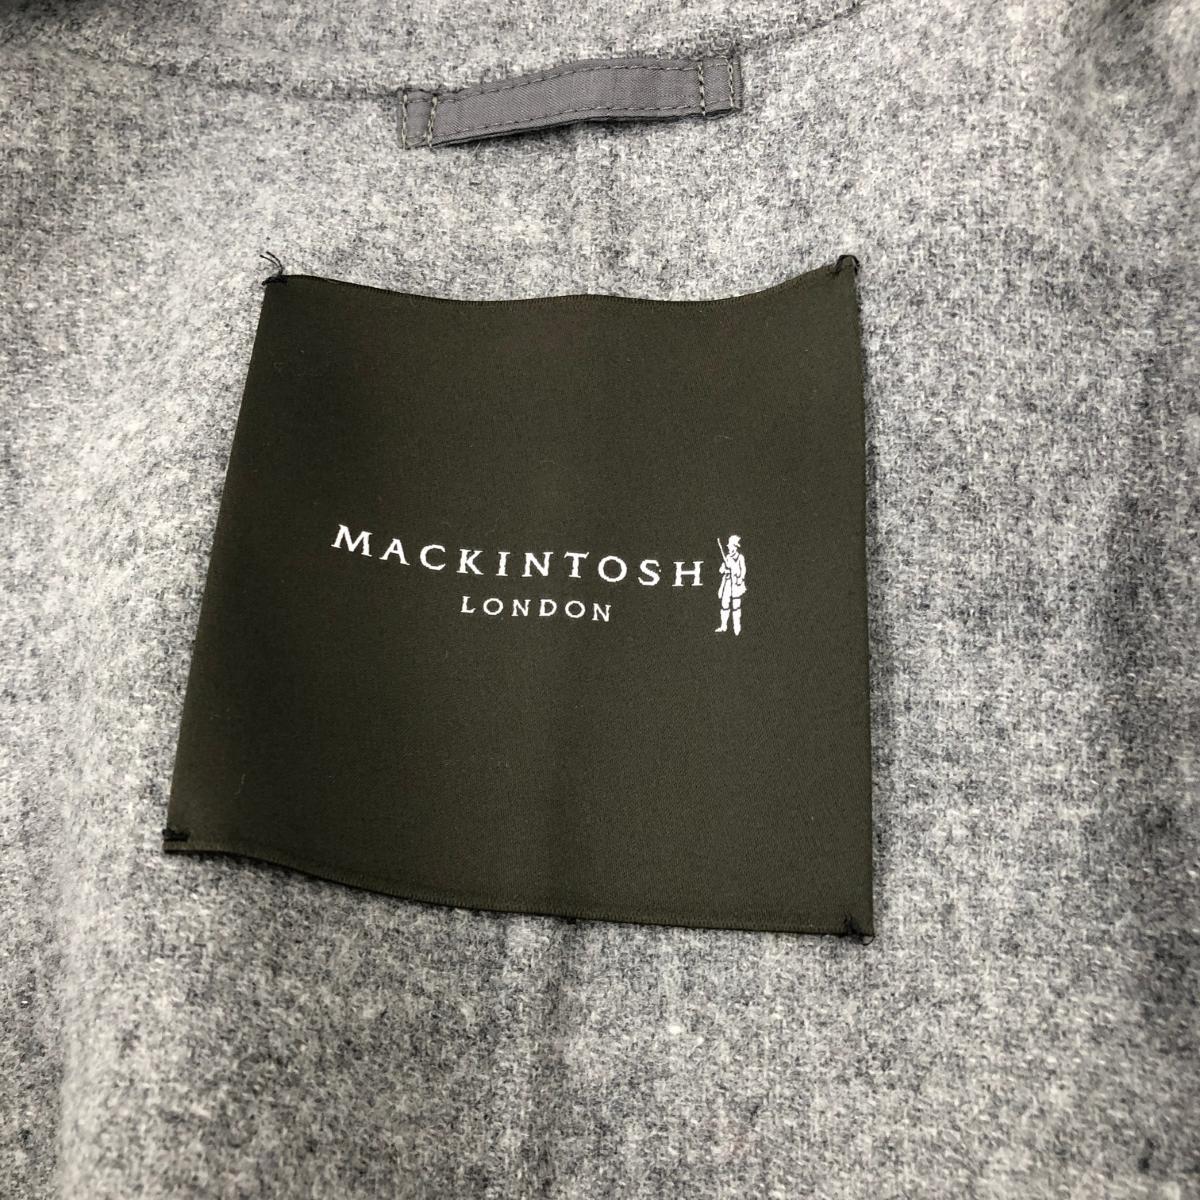 *MACKINTOSH LONDON Macintosh London пальто 40* светло-серый шерсть 100% женский внешний 